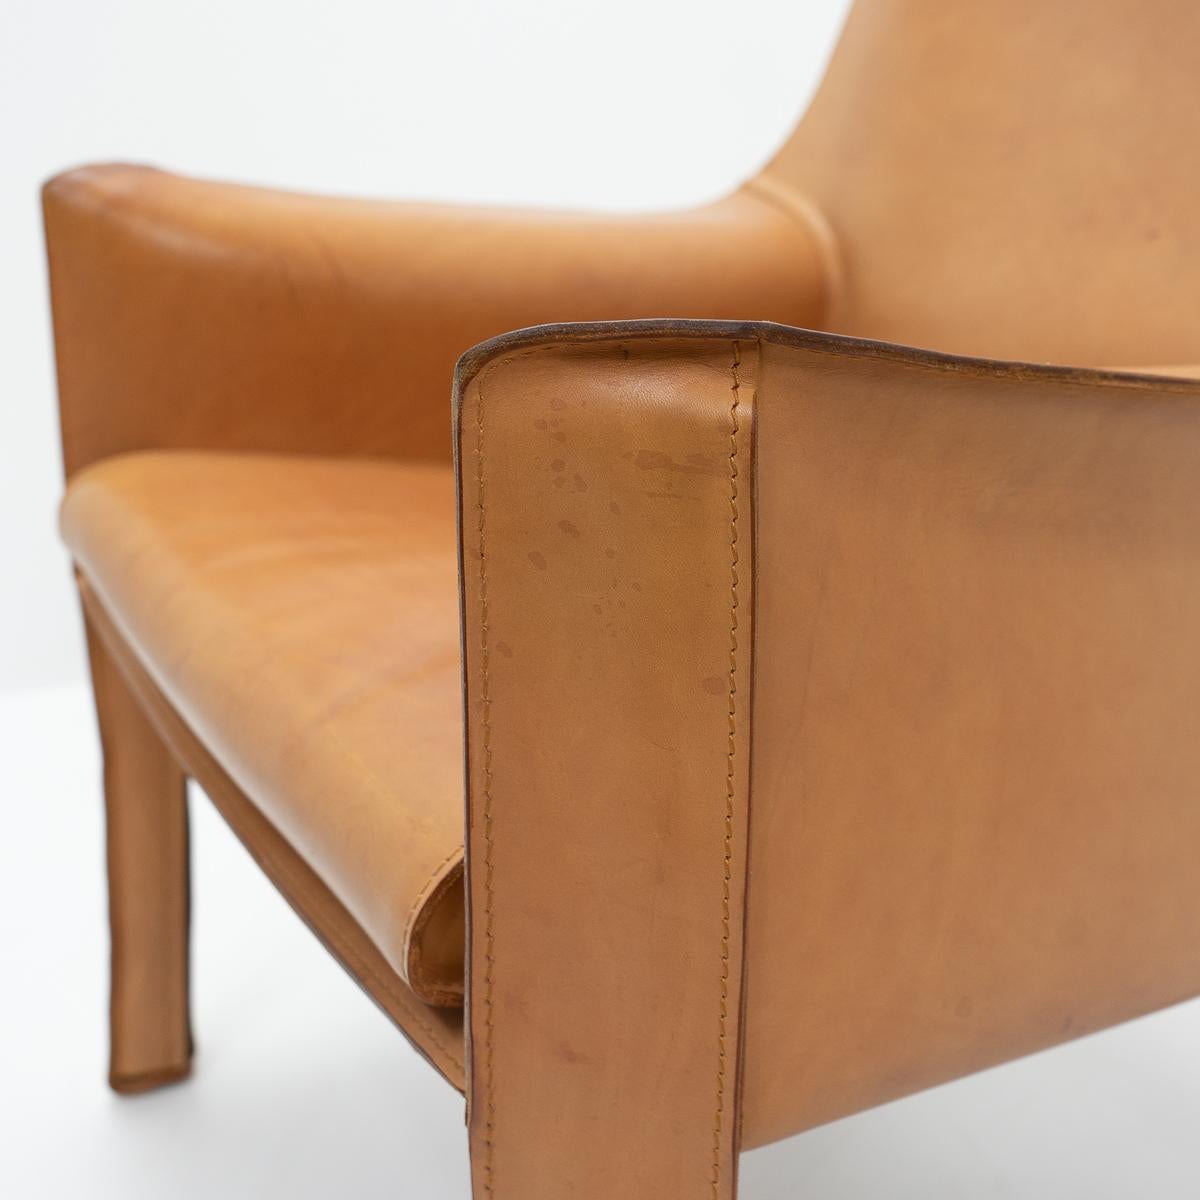 Zwei Cab 414 Sessel in cognacfarbenem Leder von Mario Bellini für Cassina.

Diese sehr bequemen Loungesessel bestehen aus einem Stahlrohrrahmen, der mit Schaumstoff und dickem Sattelleder bezogen ist. Die Lederhaut wird mit Reißverschlüssen an den